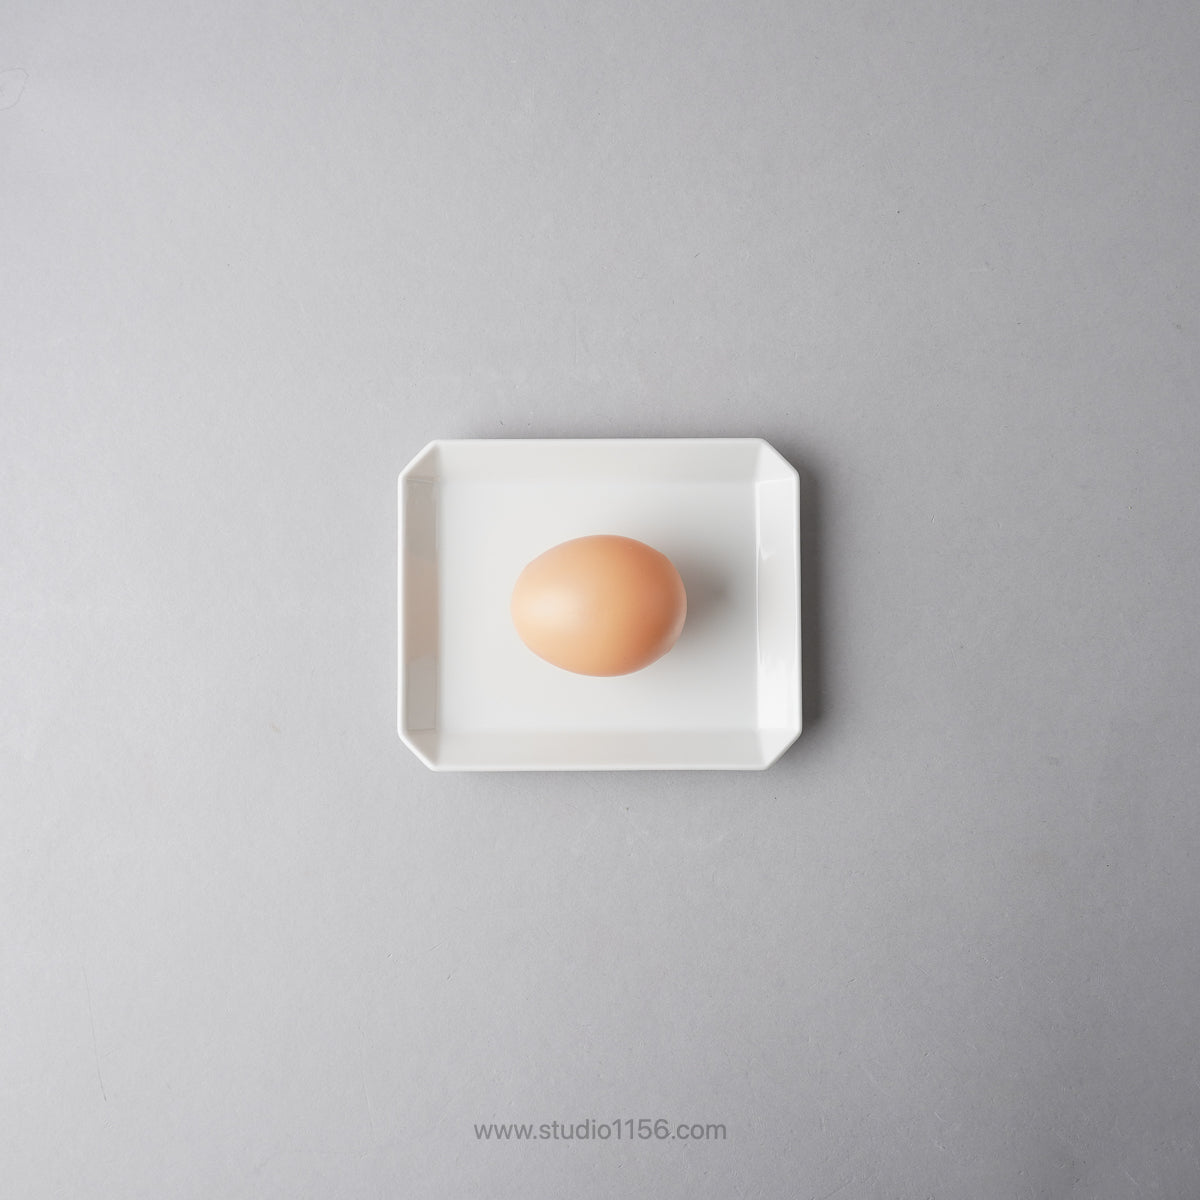 有田焼 スクエアプレート プレーン ホワイト / TY Square Plate Plain White 130 1616 / Arita Japan Studio1156